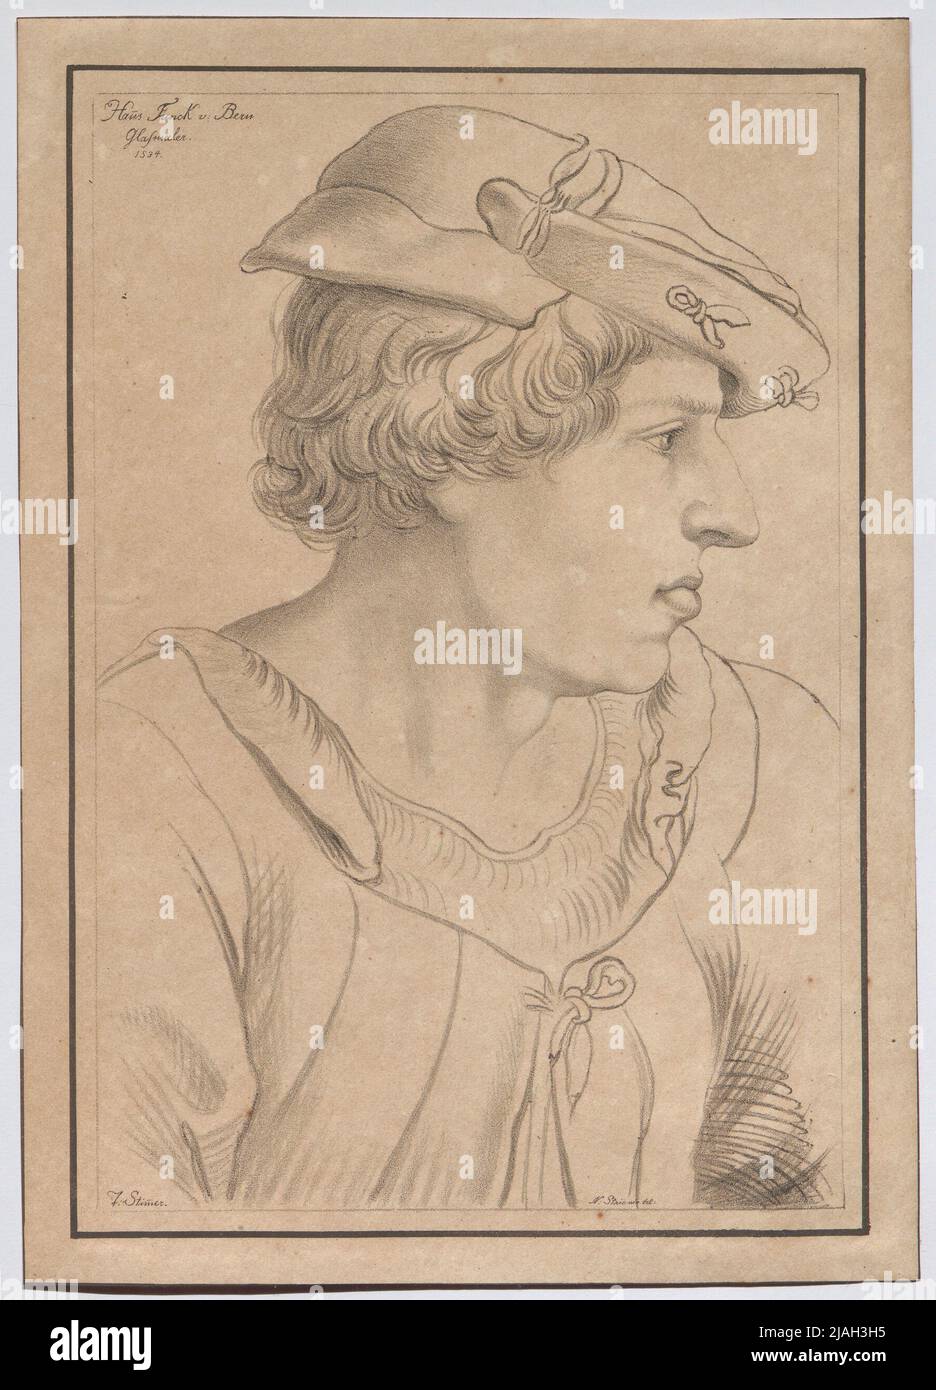 Hans Funck v. Bern glass painter 1534 '. Hans Funck von Bern, glass painter. Johann Nepomuk Franz Xaver Strixner (1782-1855), artist Stock Photo